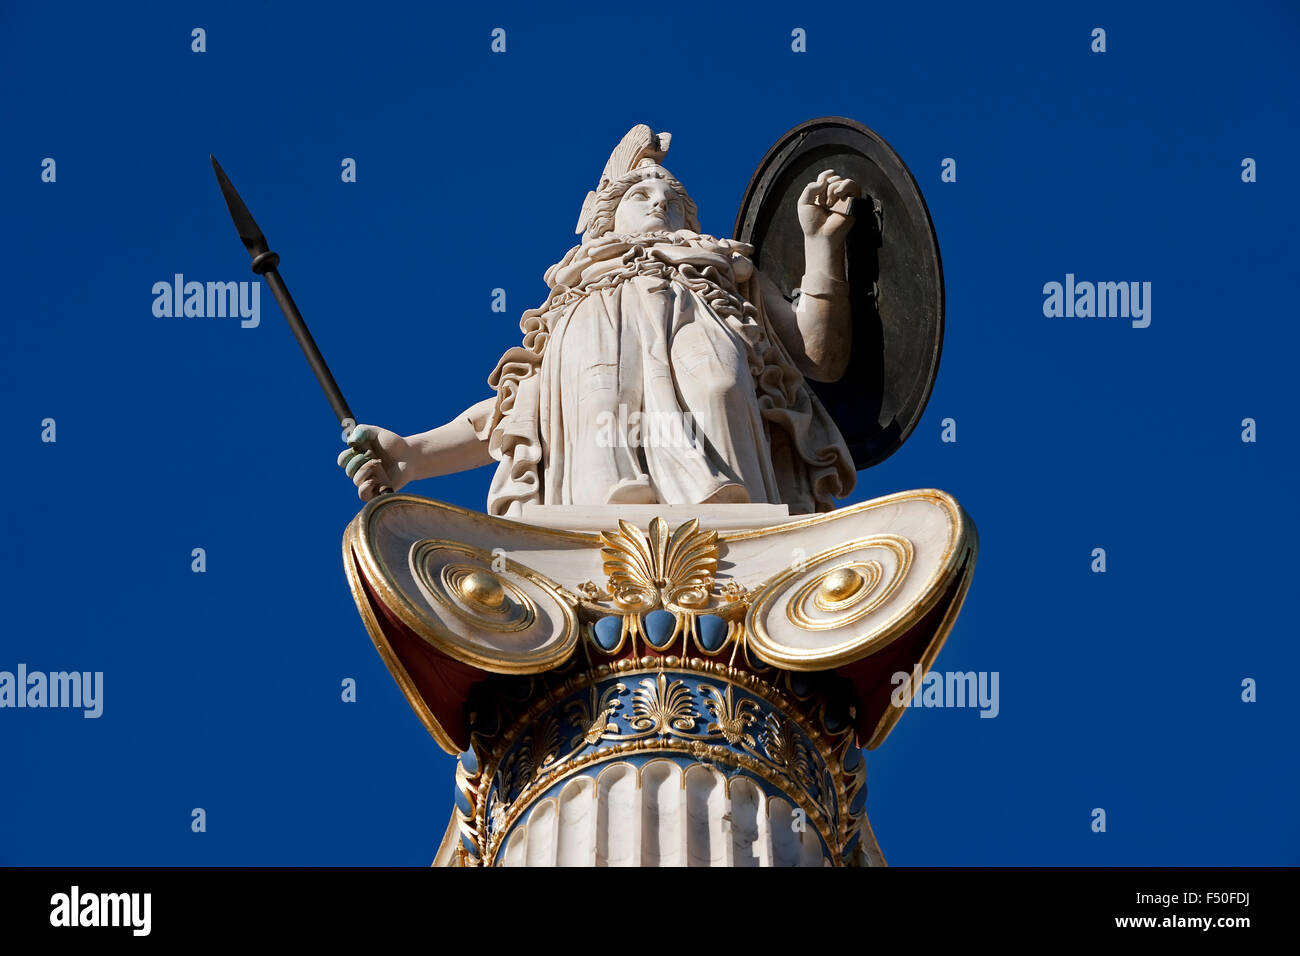 Nahaufnahme von der griechischen Göttin Athene / Pallas Athene Statue und Ornament Säule Elemente gegen blauen Himmel. Athen, GR Stockfoto